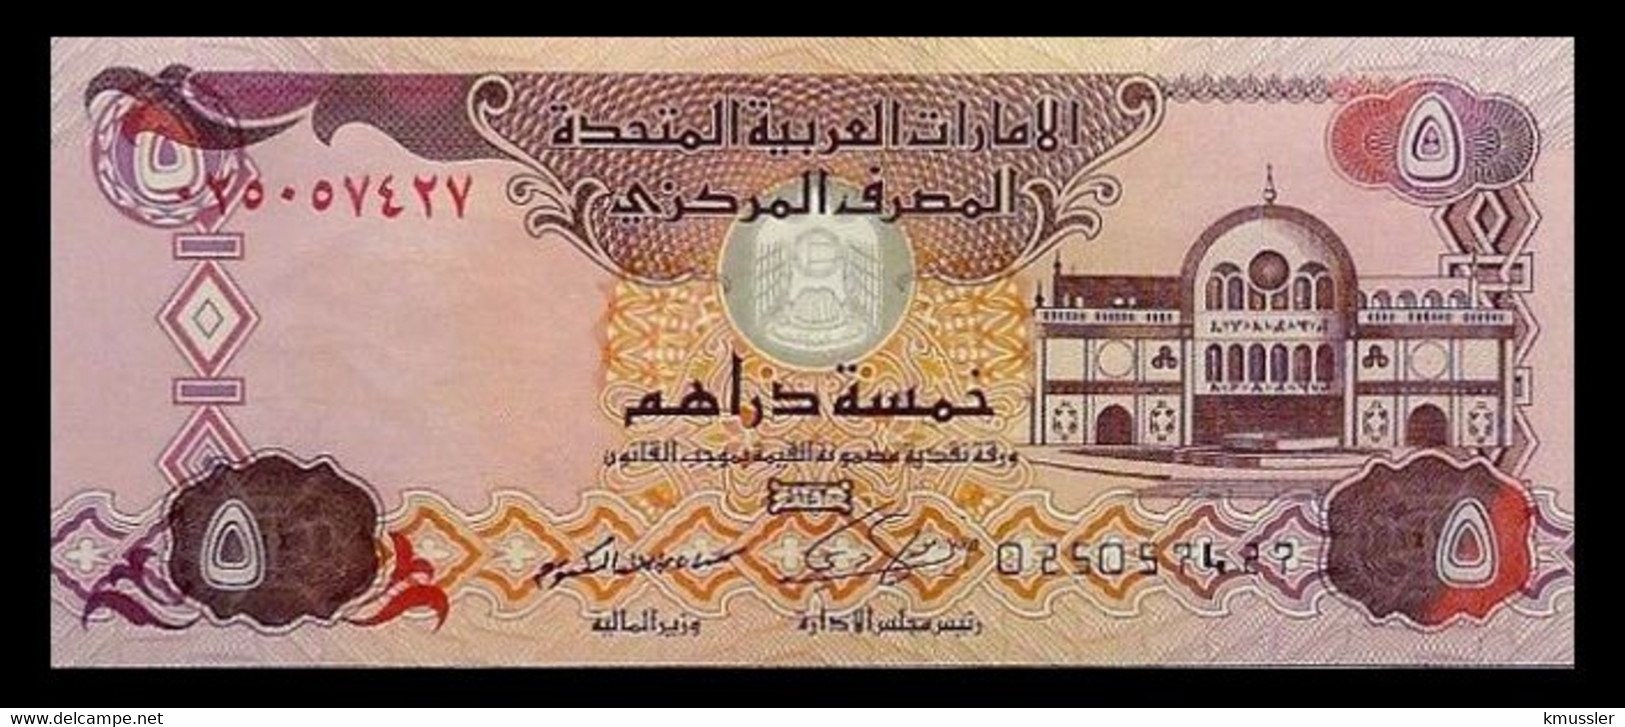 # # # Banknote Aus Den Vereinigten Emiraten (VAE) 5 Dirhams 2014 UNC # # # - United Arab Emirates